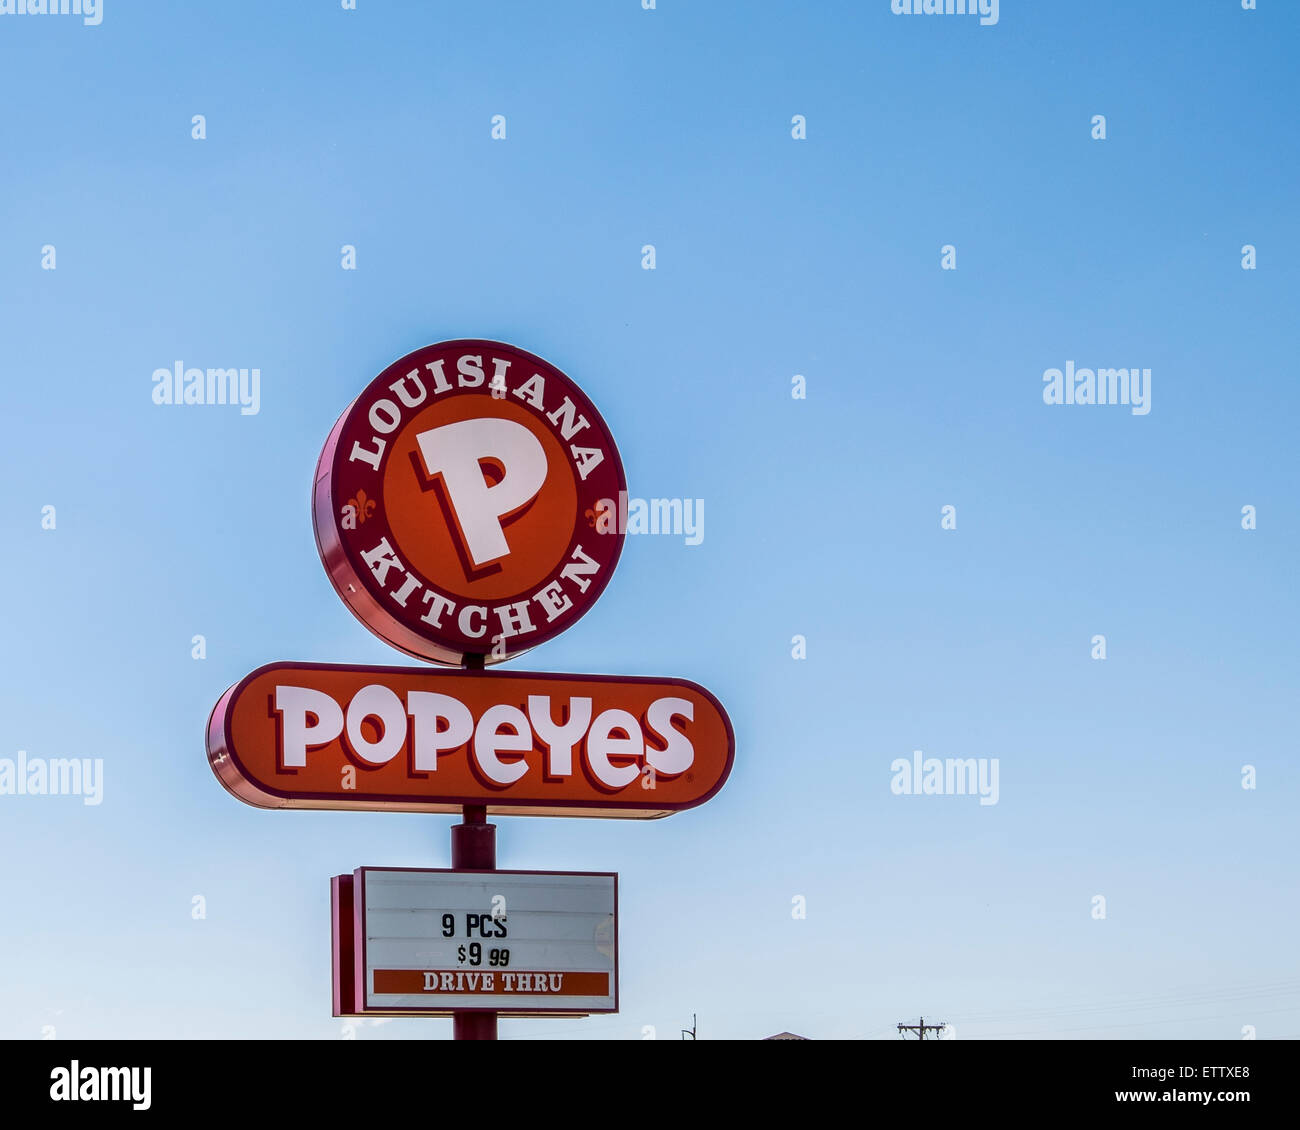 Un pole sign advertising Popeyes, une nourriture assaisonnée cajun restaurant fast food. Oklahoma City, Oklahoma, USA. Banque D'Images